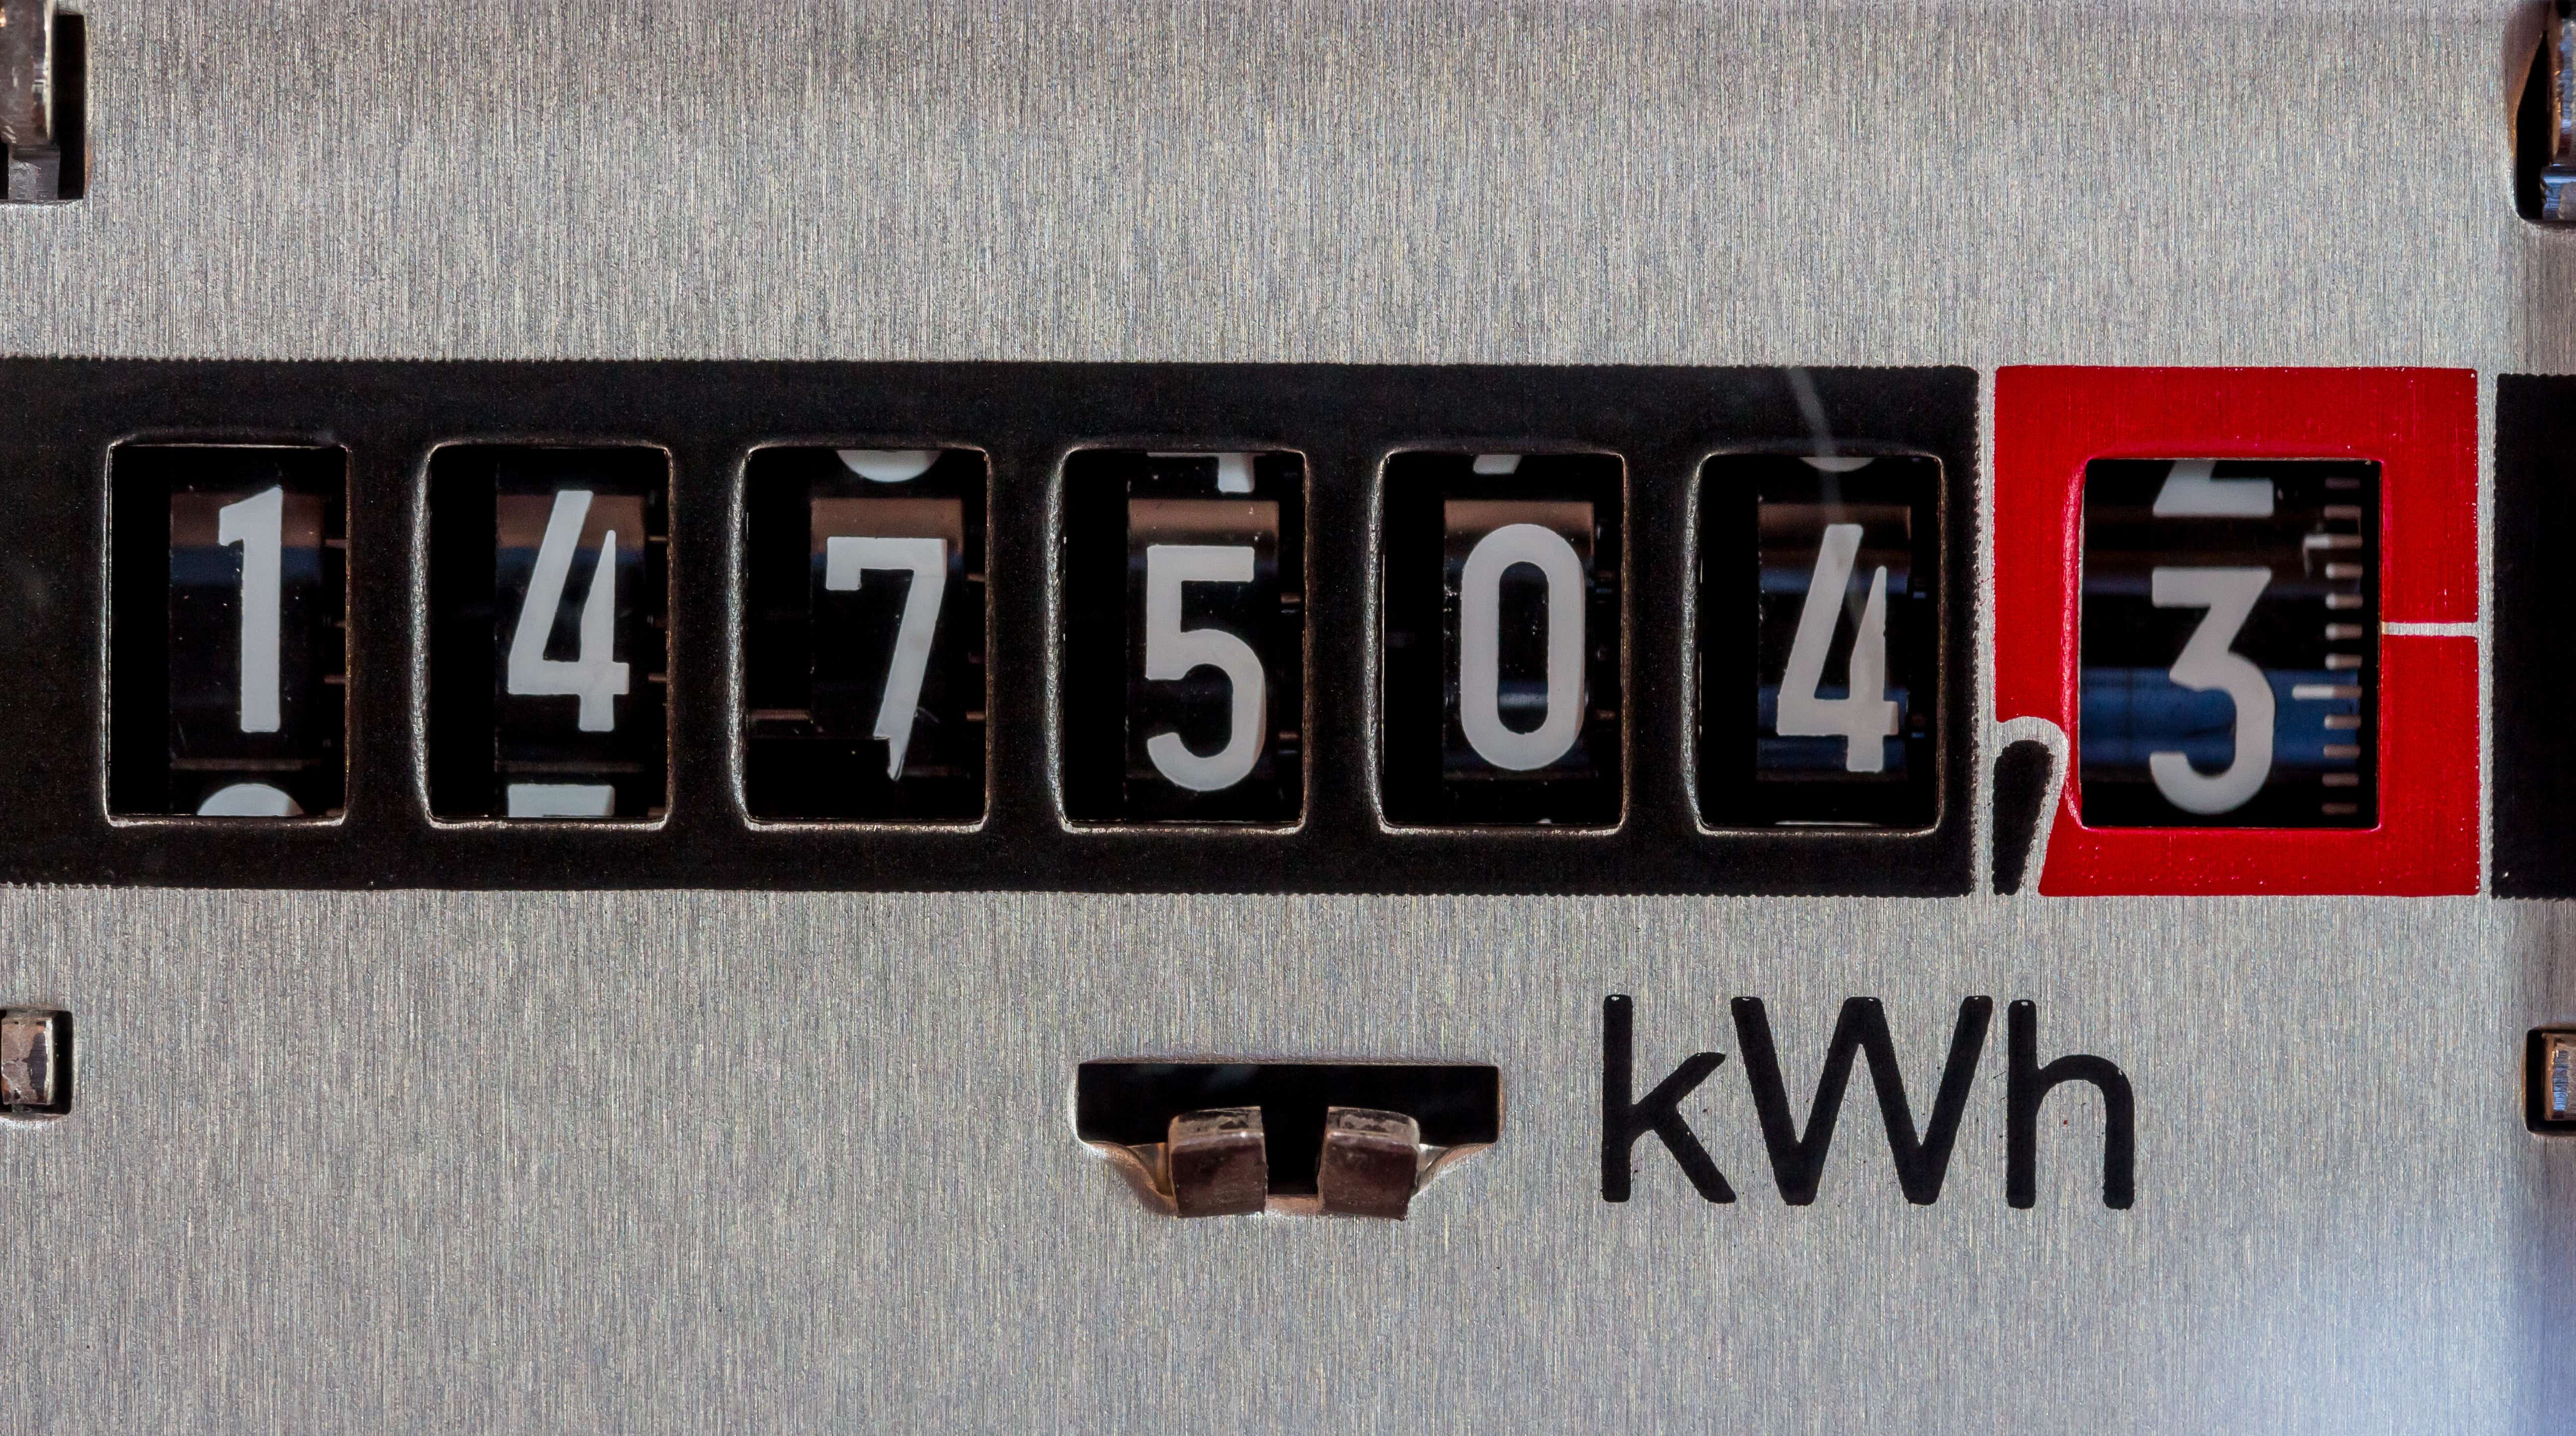 Fixed price energy meter